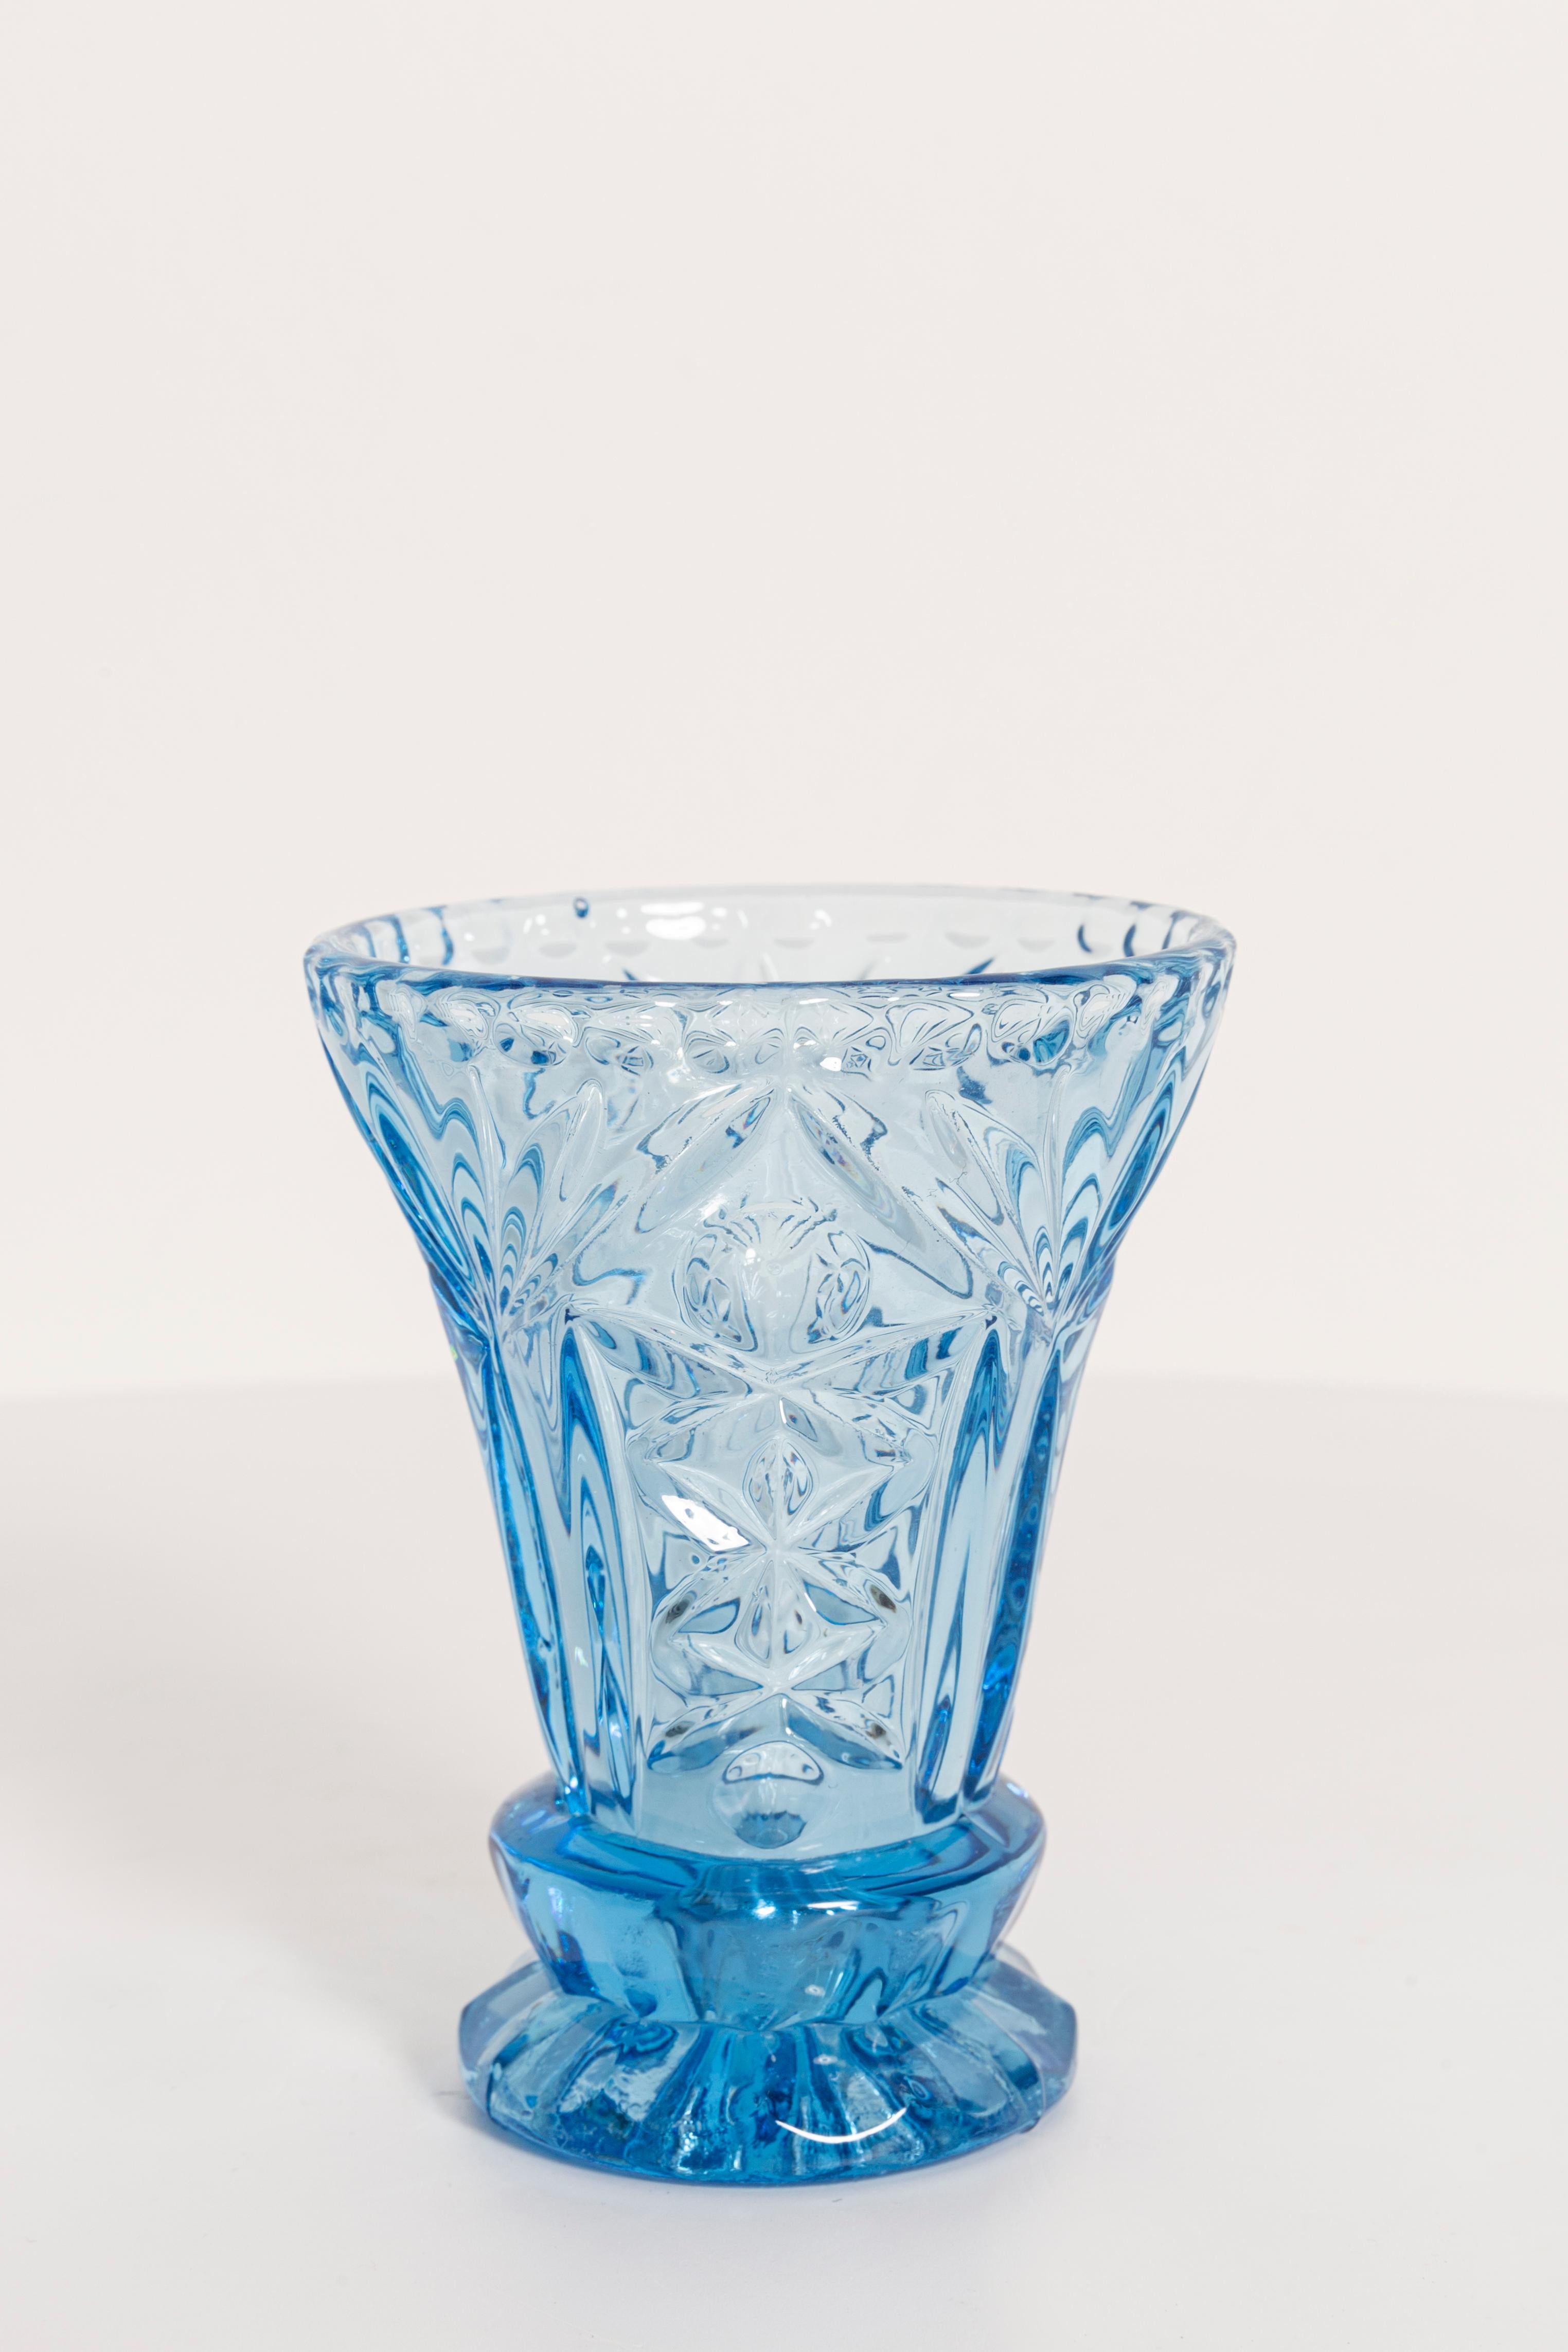 Produziert in den 1960er Jahren.

Gepresstes Glas in perfektem Zustand.
Die Vase sieht aus, als wäre sie gerade erst aus der Schachtel genommen worden.
Das Bild spiegelt die Farbe wider, in der es sich live präsentiert.

Keine Zacken, Mängel